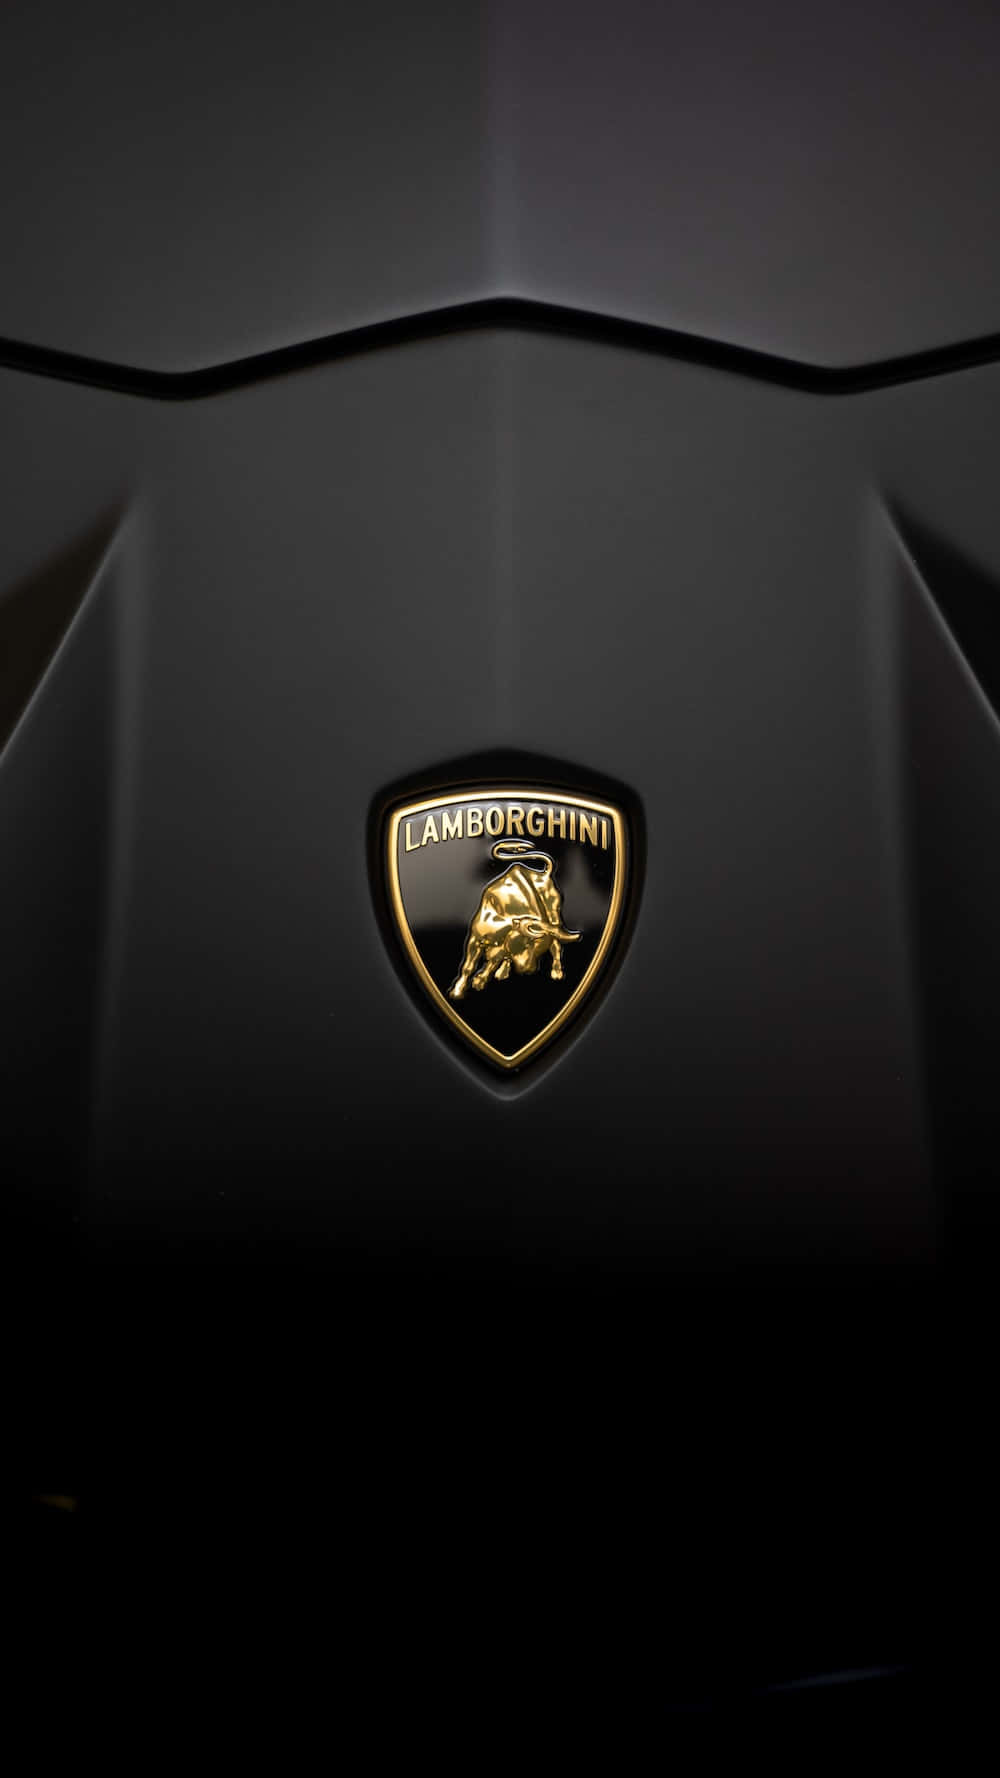 Lamborghinihuracan - Sfondi Per Computer O Telefono Mobile.